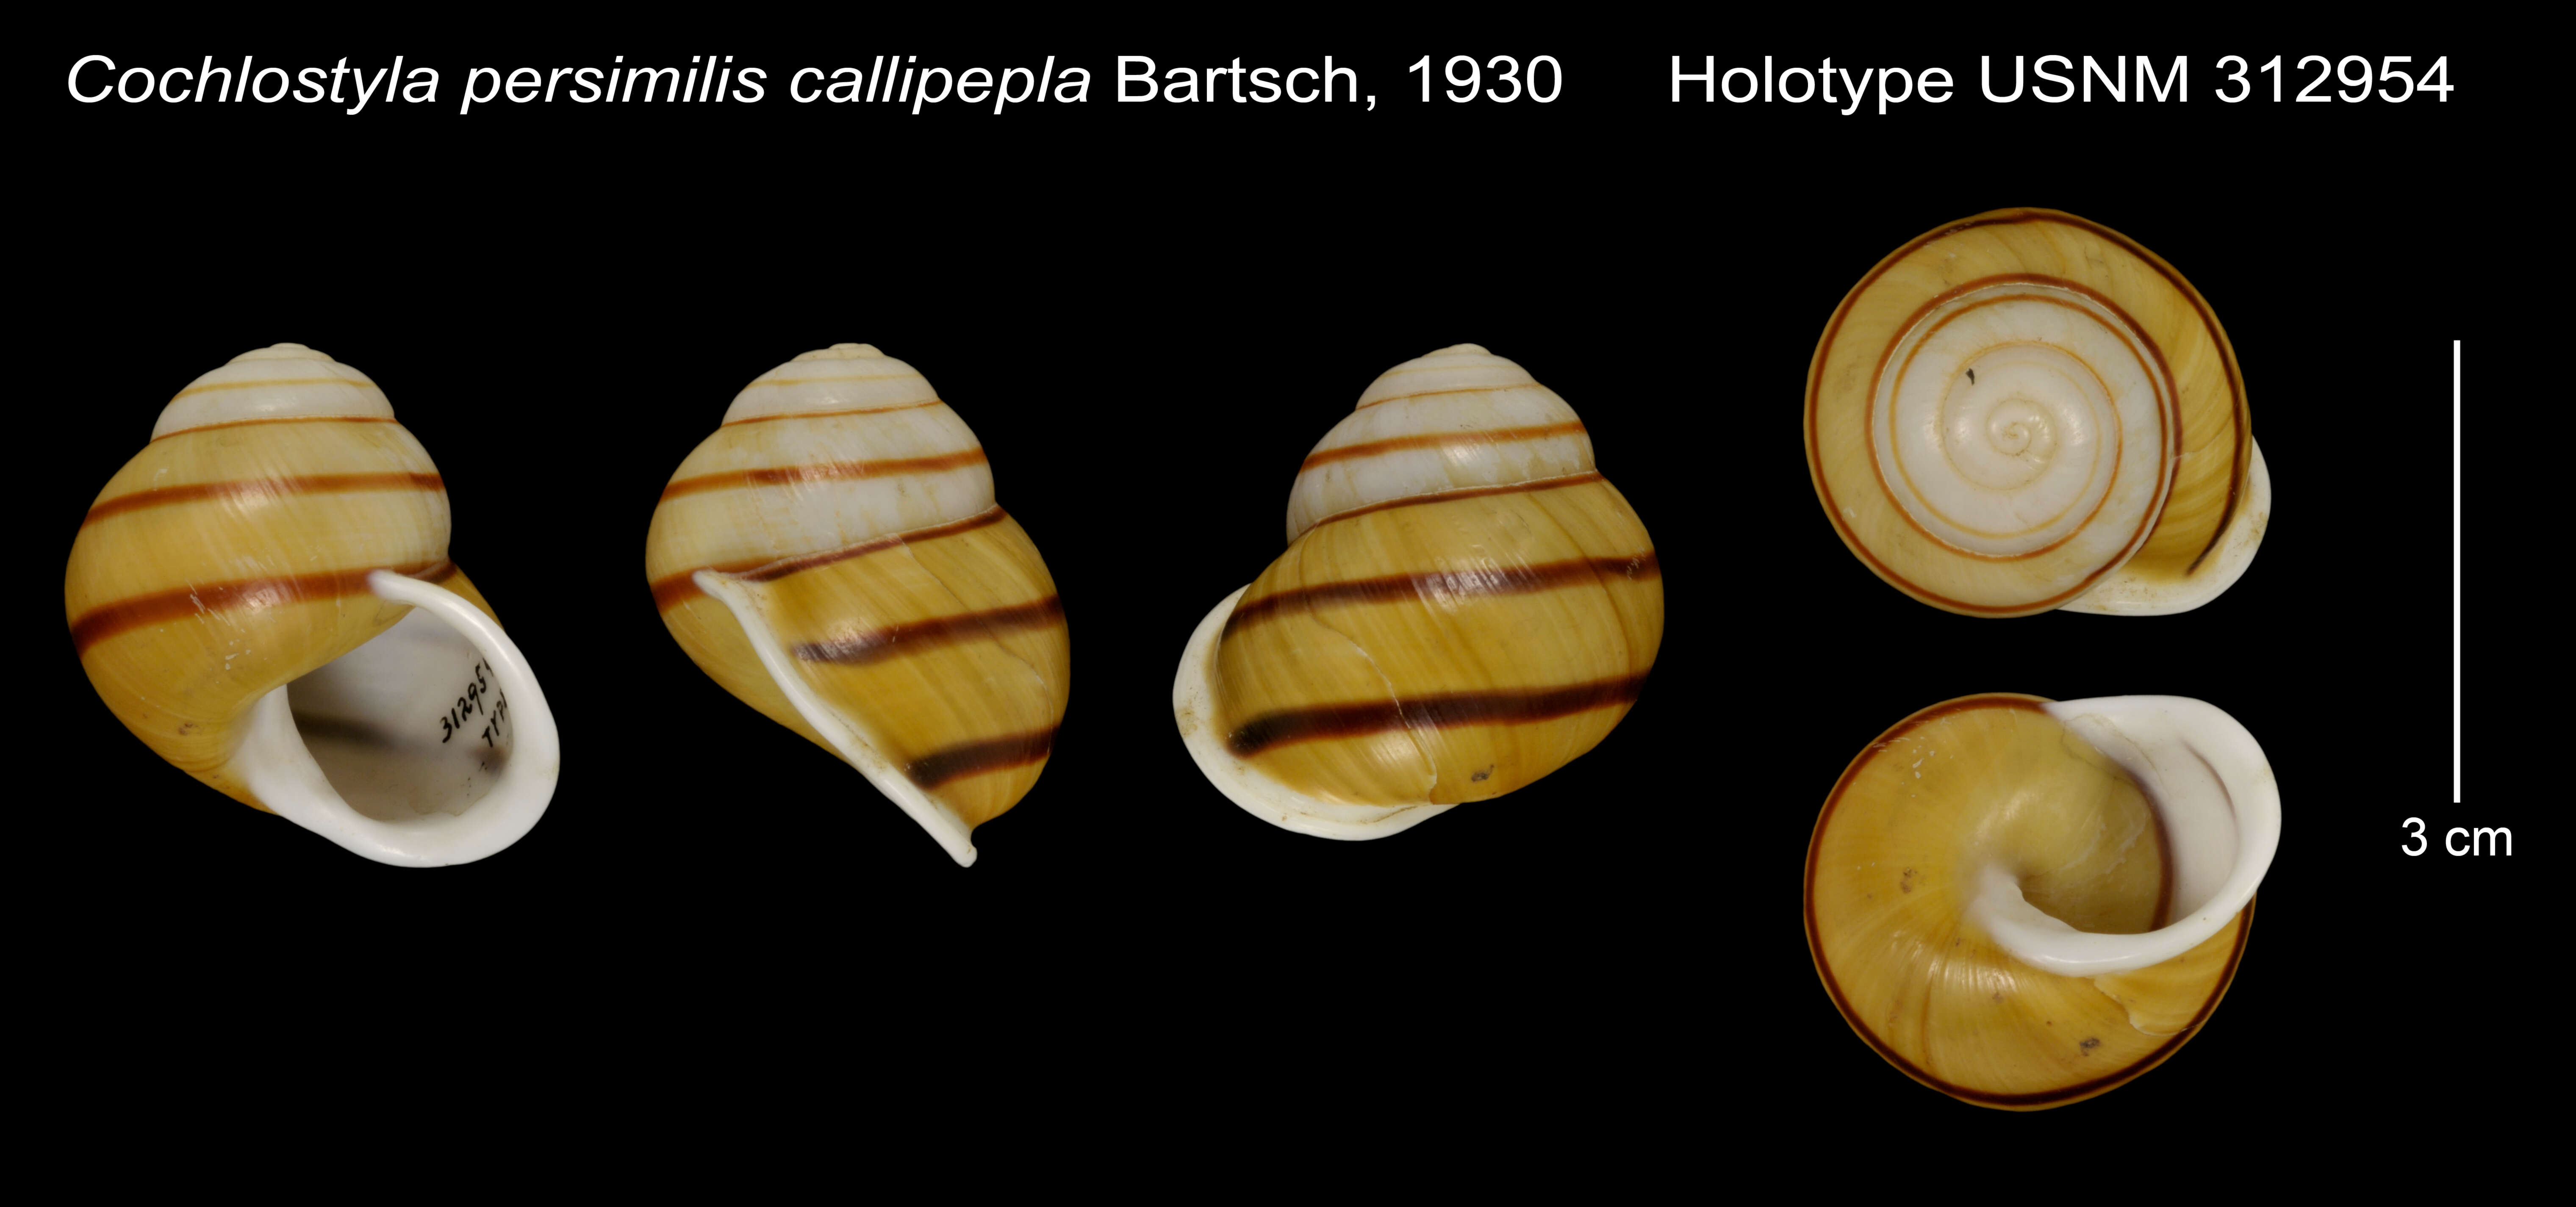 Image of Cochlostyla persimilis callipepla Bartsch